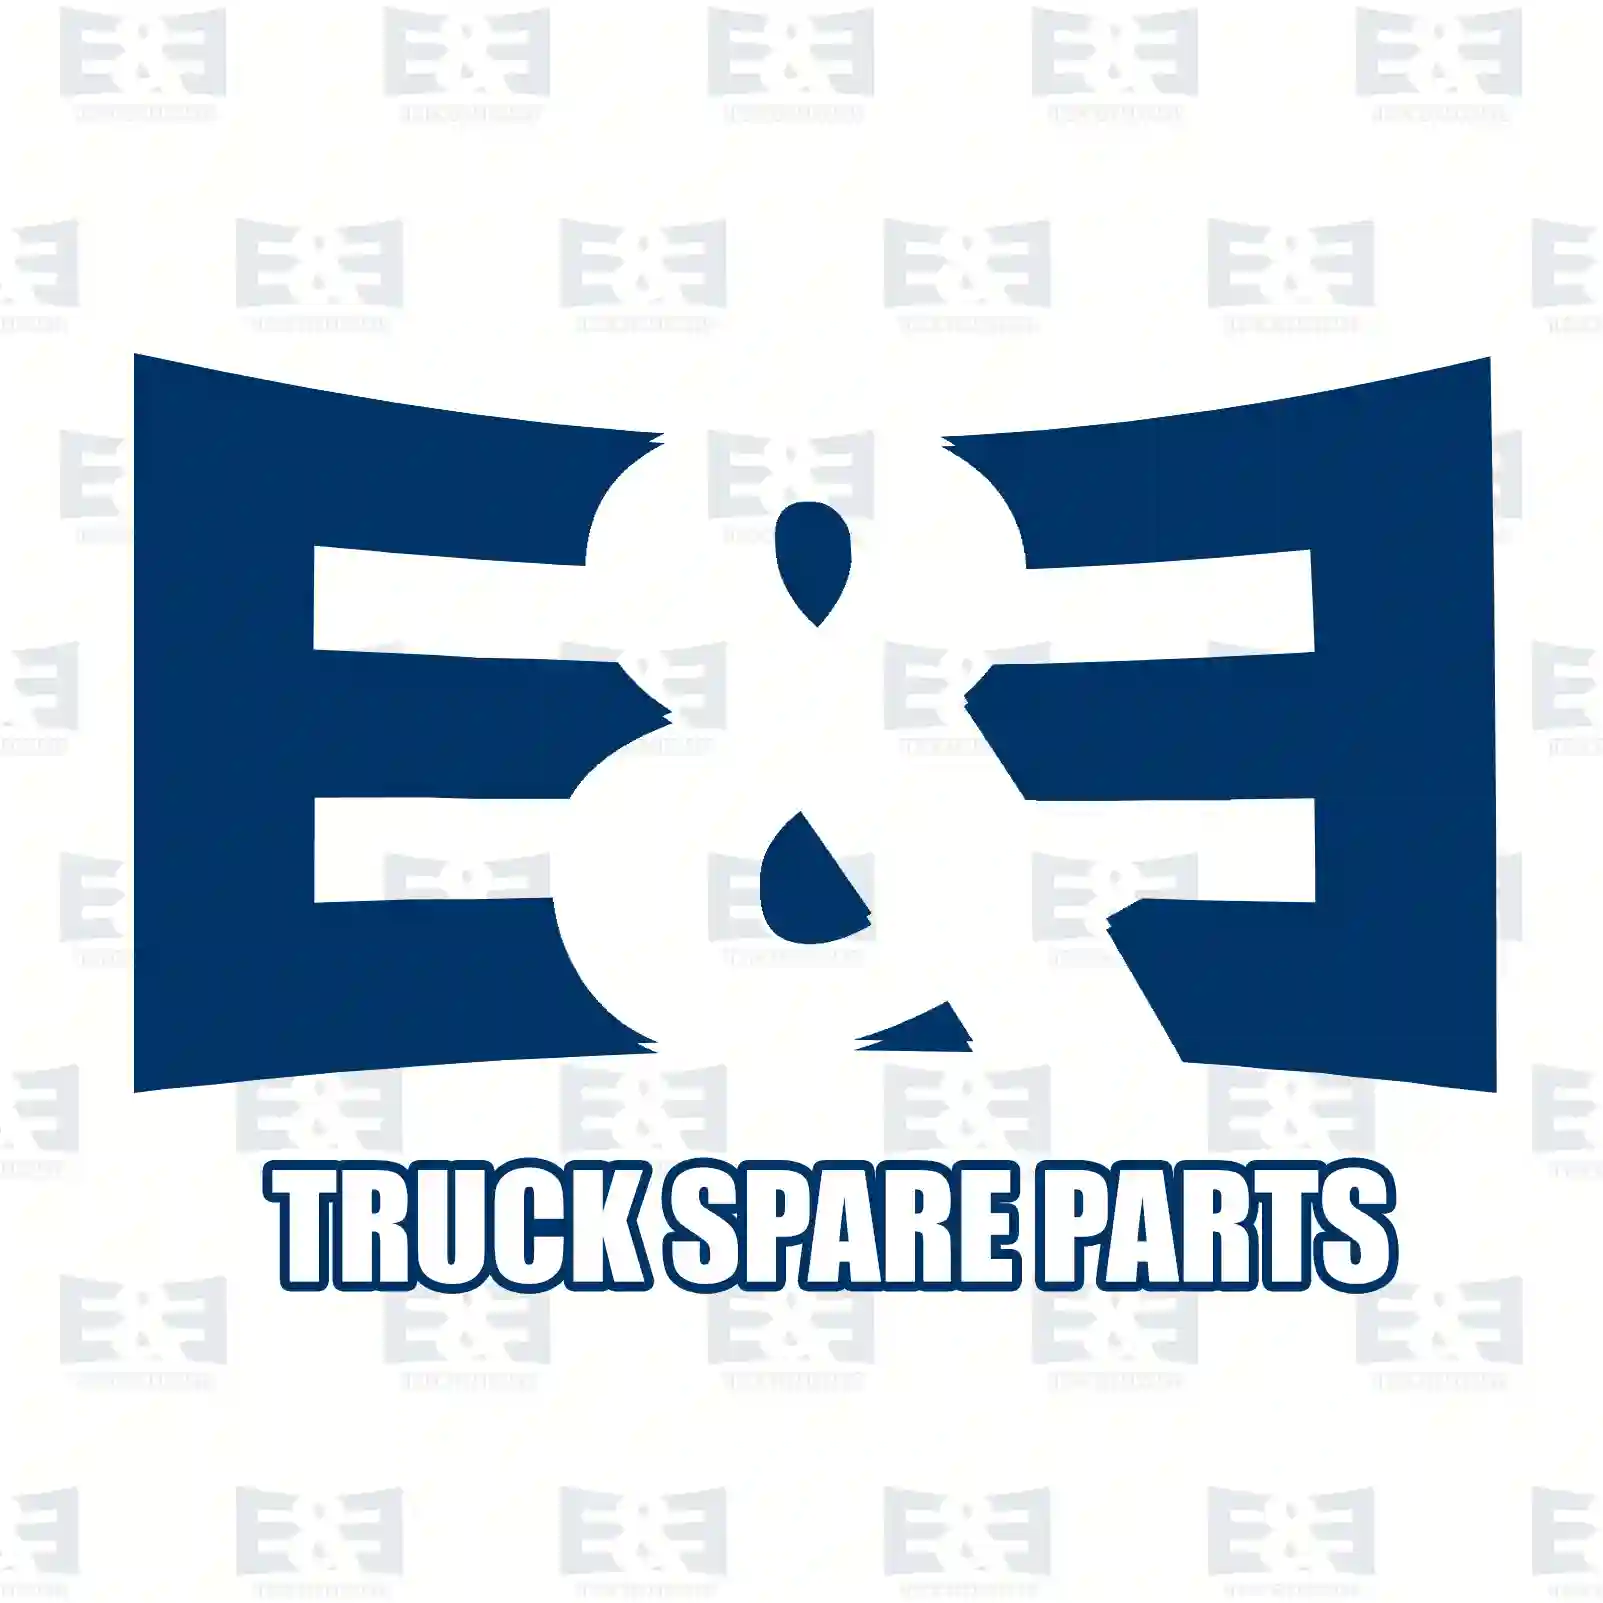 Compressor, 2E2296765, 51541007010 ||  2E2296765 E&E Truck Spare Parts | Truck Spare Parts, Auotomotive Spare Parts Compressor, 2E2296765, 51541007010 ||  2E2296765 E&E Truck Spare Parts | Truck Spare Parts, Auotomotive Spare Parts